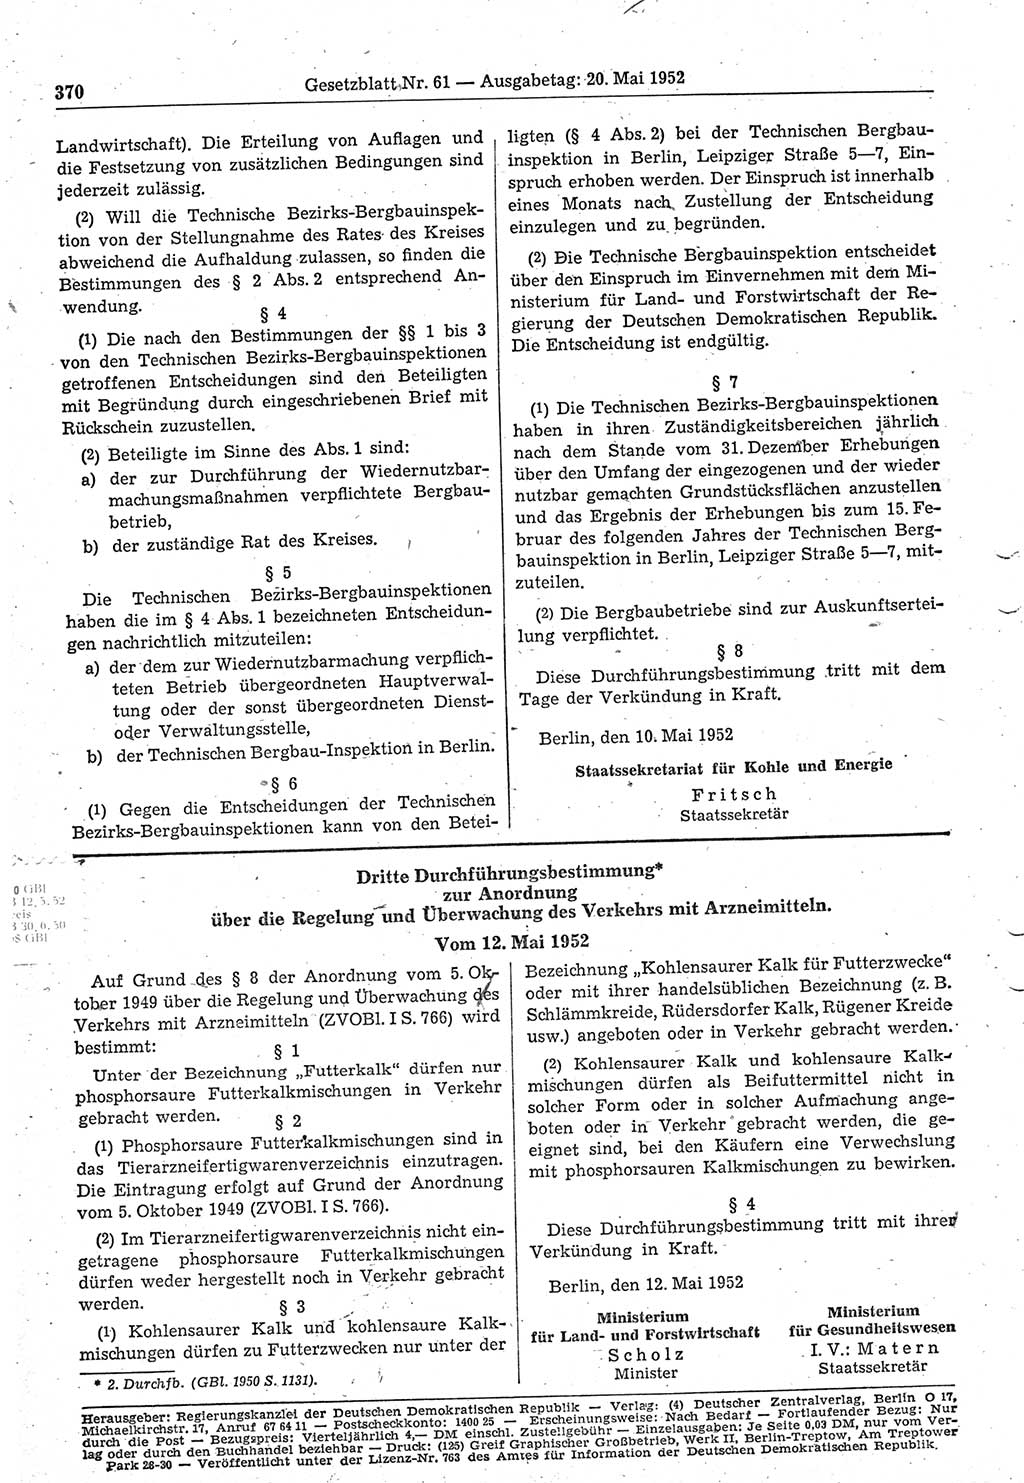 Gesetzblatt (GBl.) der Deutschen Demokratischen Republik (DDR) 1952, Seite 370 (GBl. DDR 1952, S. 370)